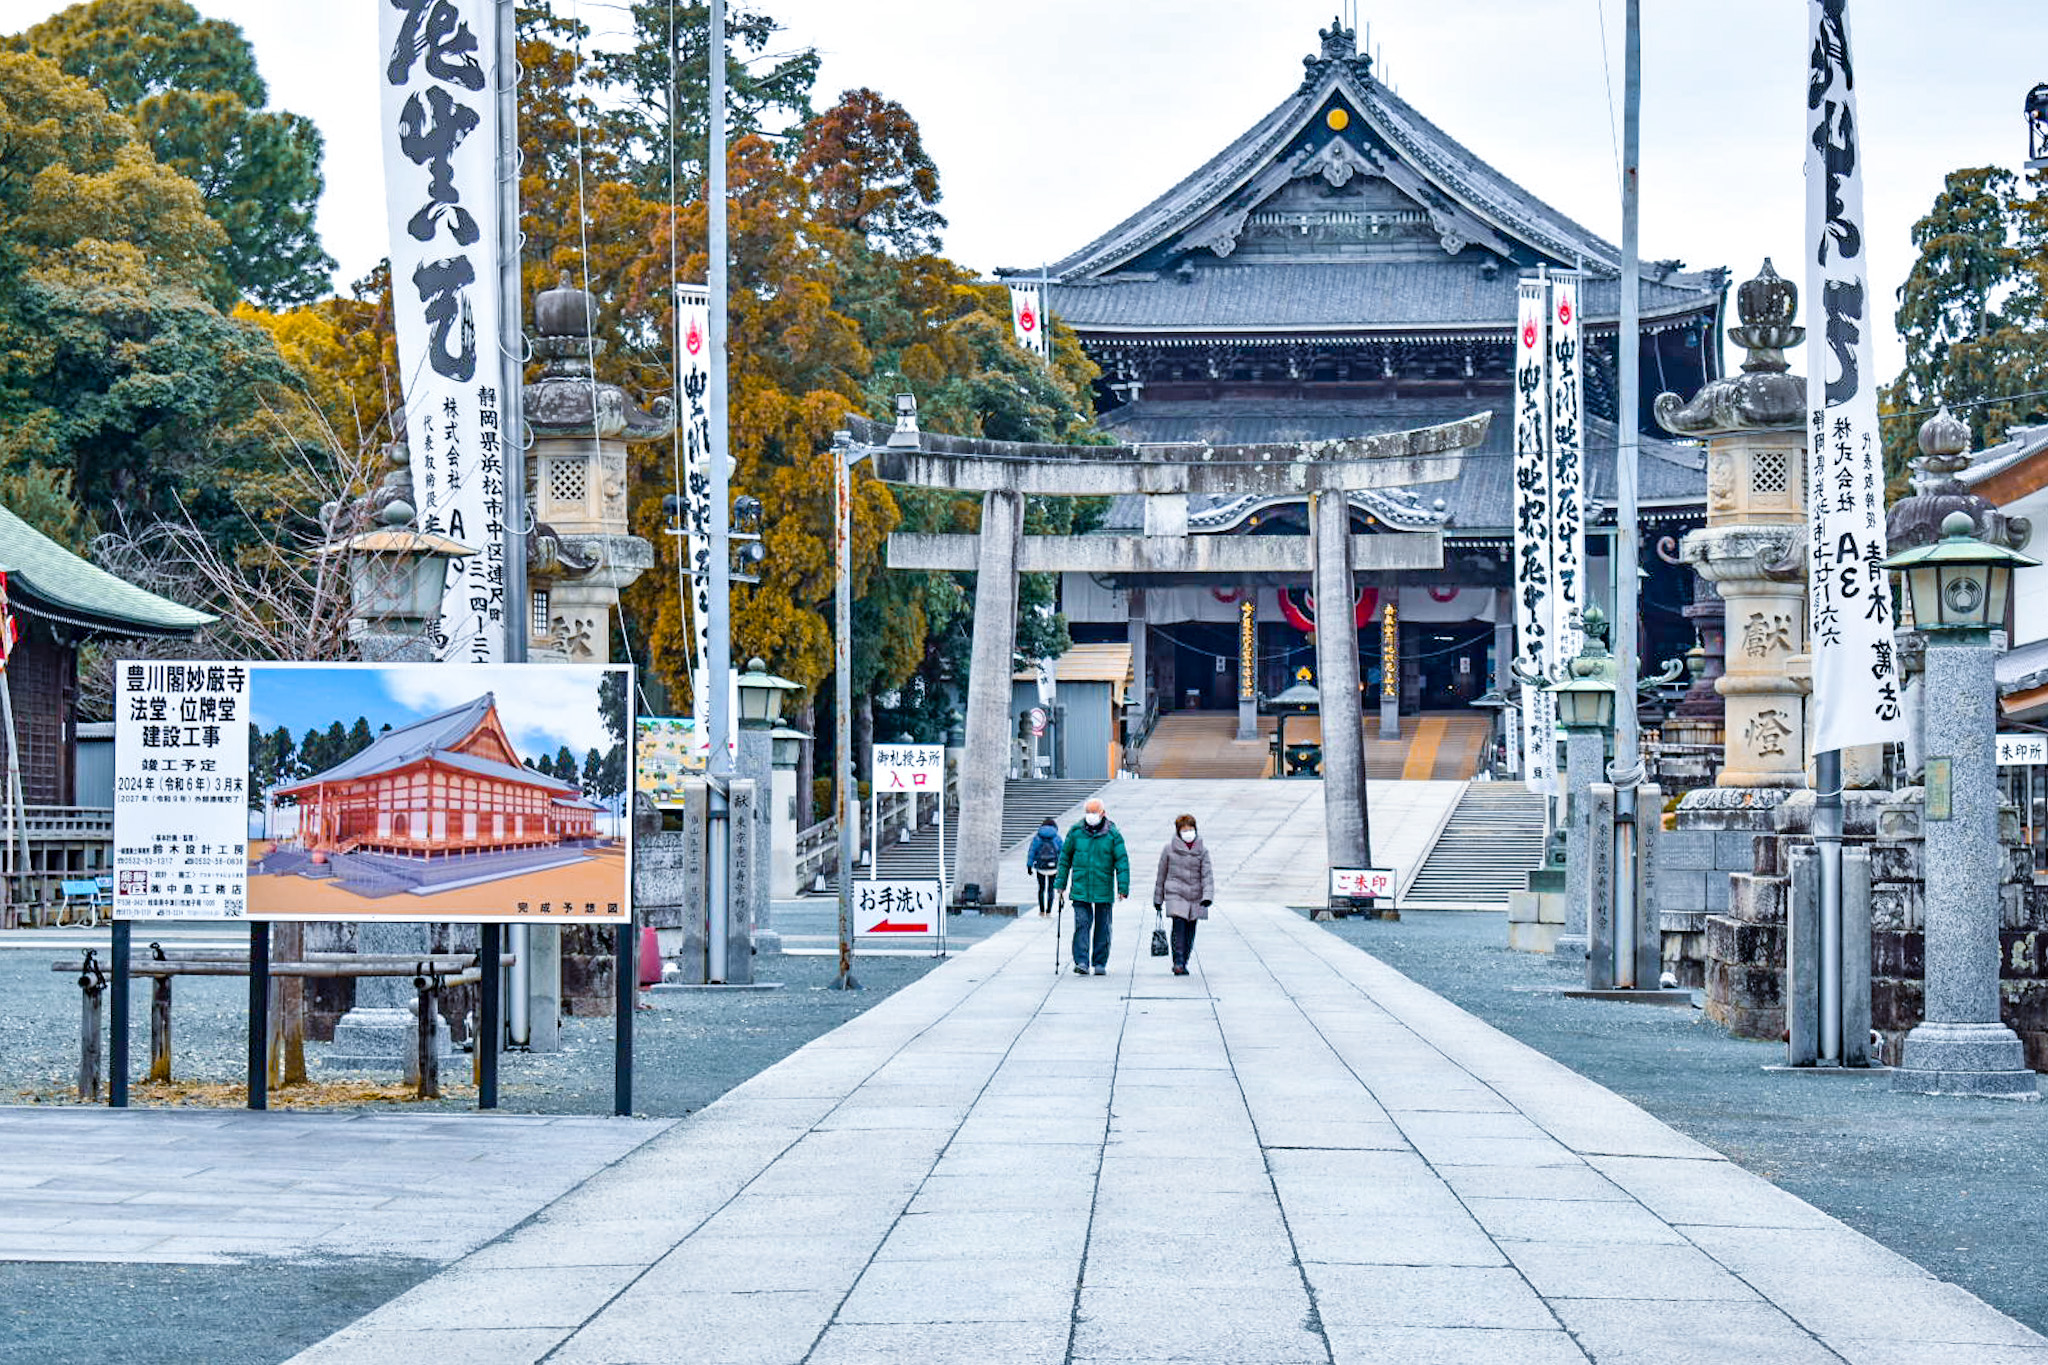 Inari Ōkami: A Divindade da Prosperidade no Japão